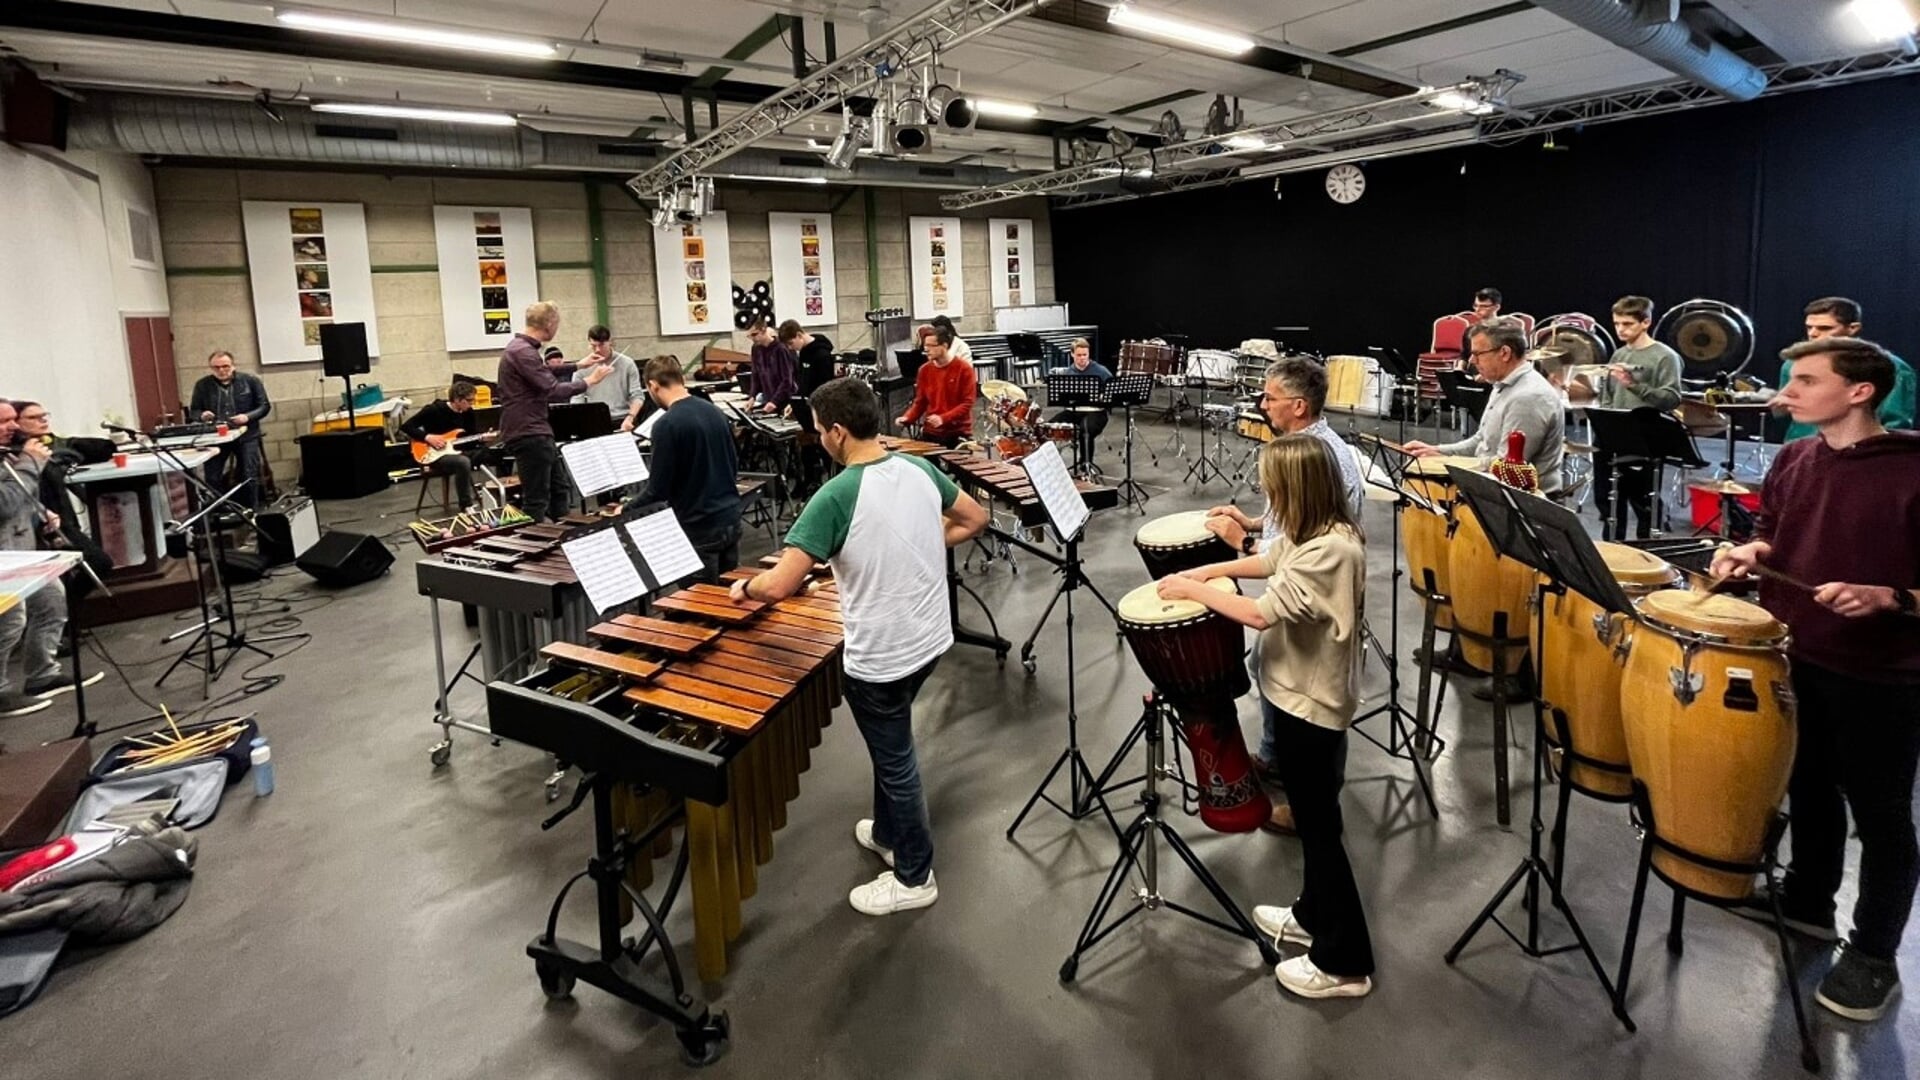 Repetitie voor het Groots Drum Event in de nieuwe zaal van Van der Valk in Nuland.